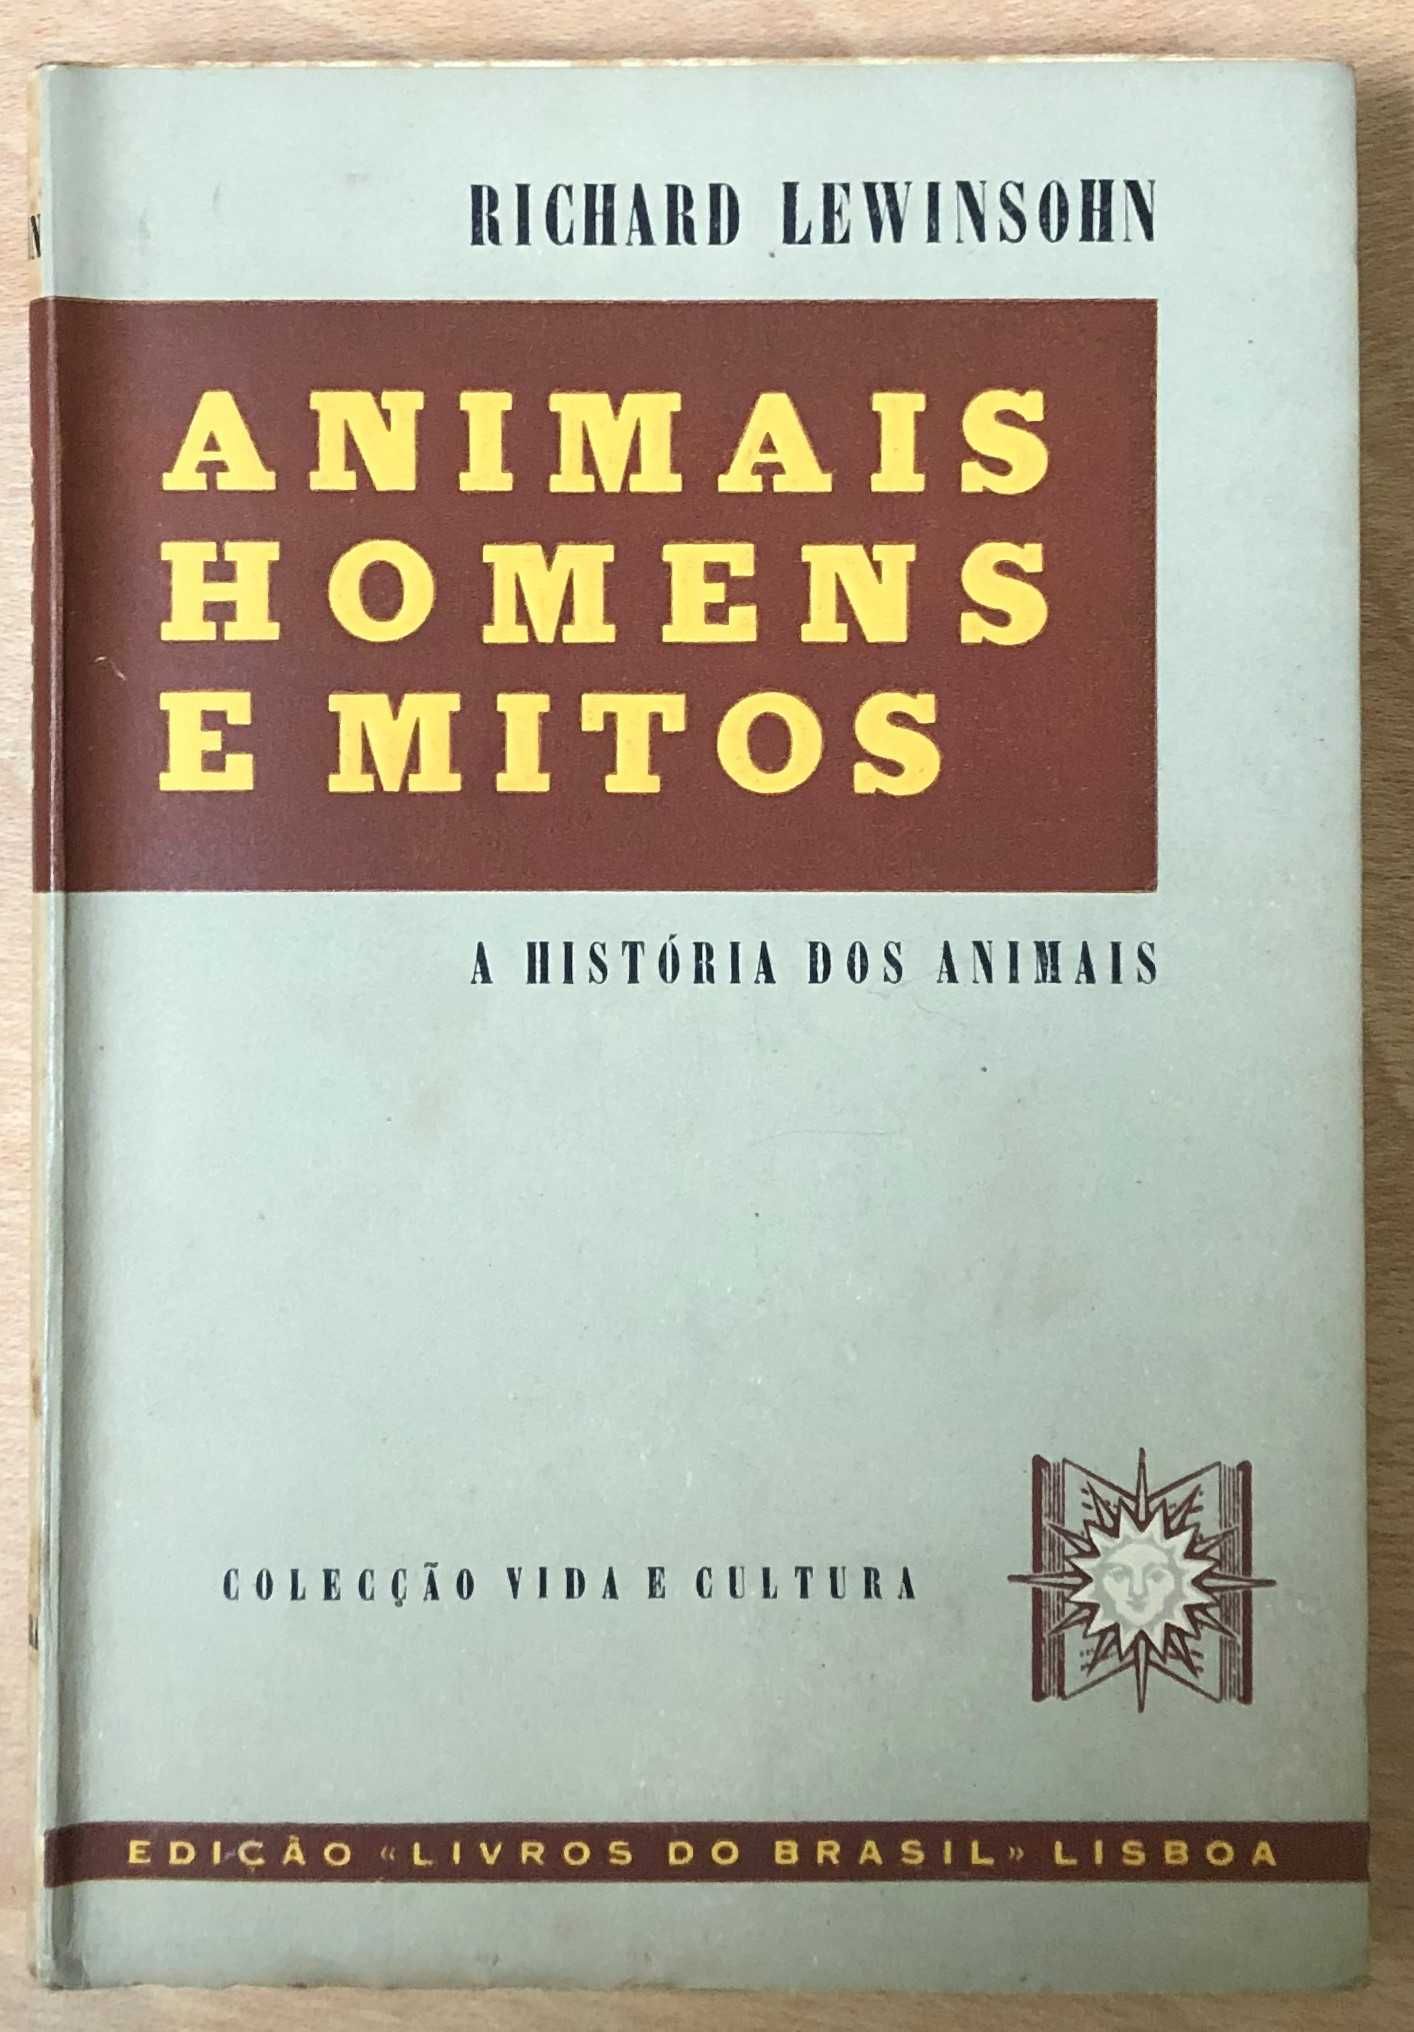 animais homens e mitos, richard lewinsohn, livros do brasil